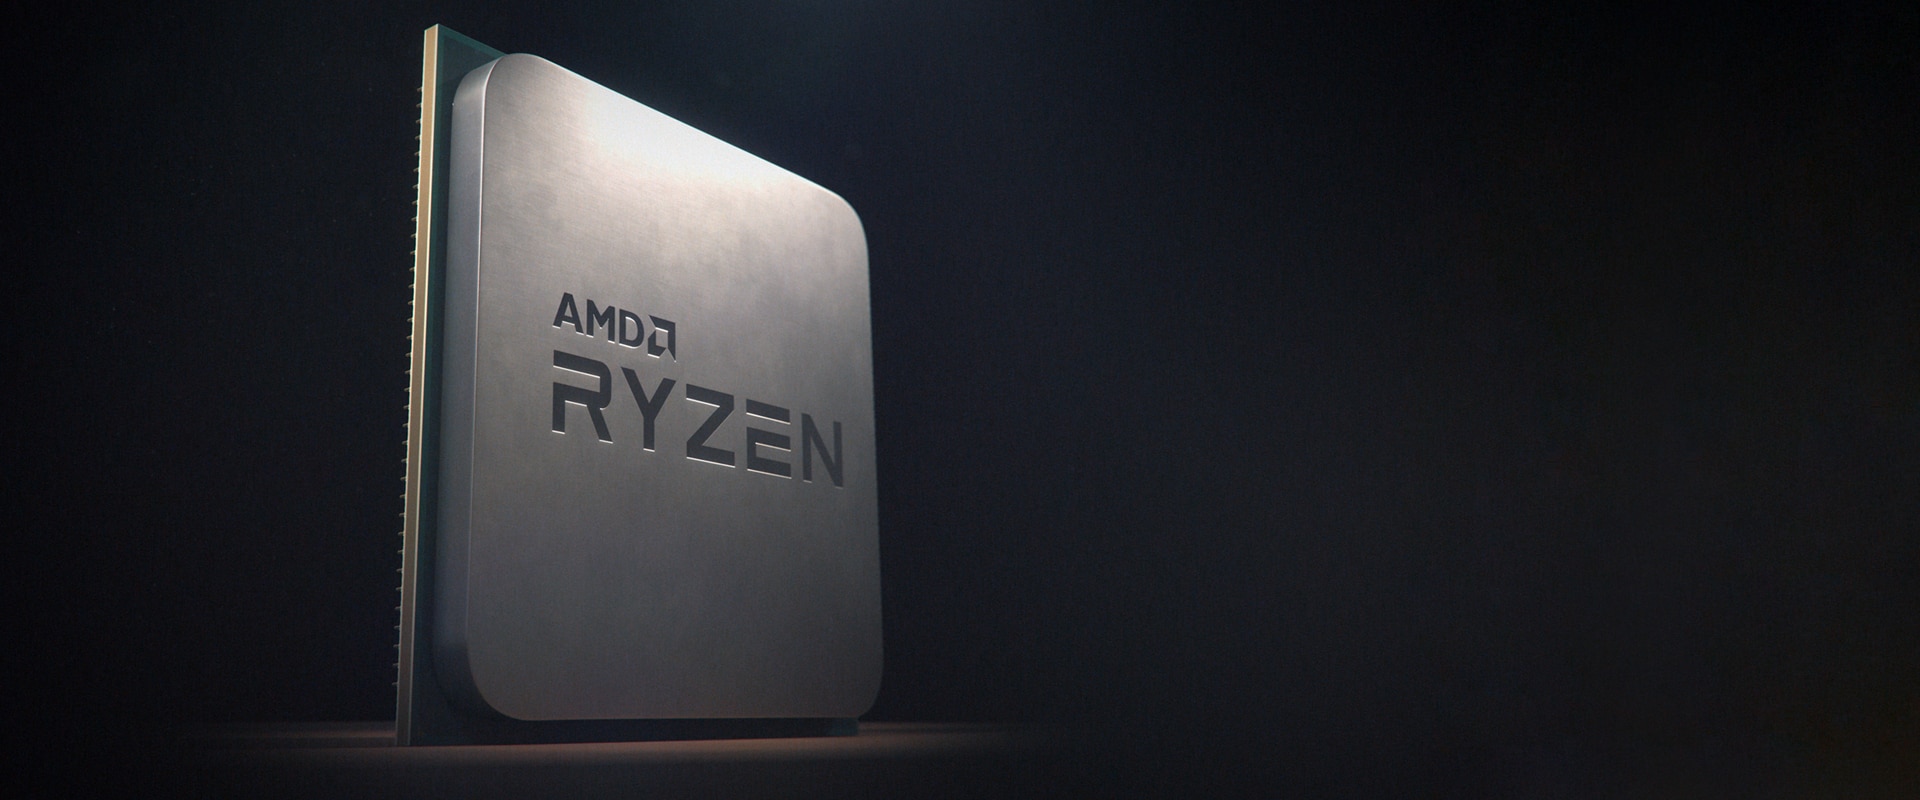 Immagine pubblicata in relazione al seguente contenuto: Gi in rete tracce dei processori AMD Ryzen 4000 e Ryzen Threadripper 4000? | Nome immagine: news29809_AMD-Rryzen-chip_1.jpg